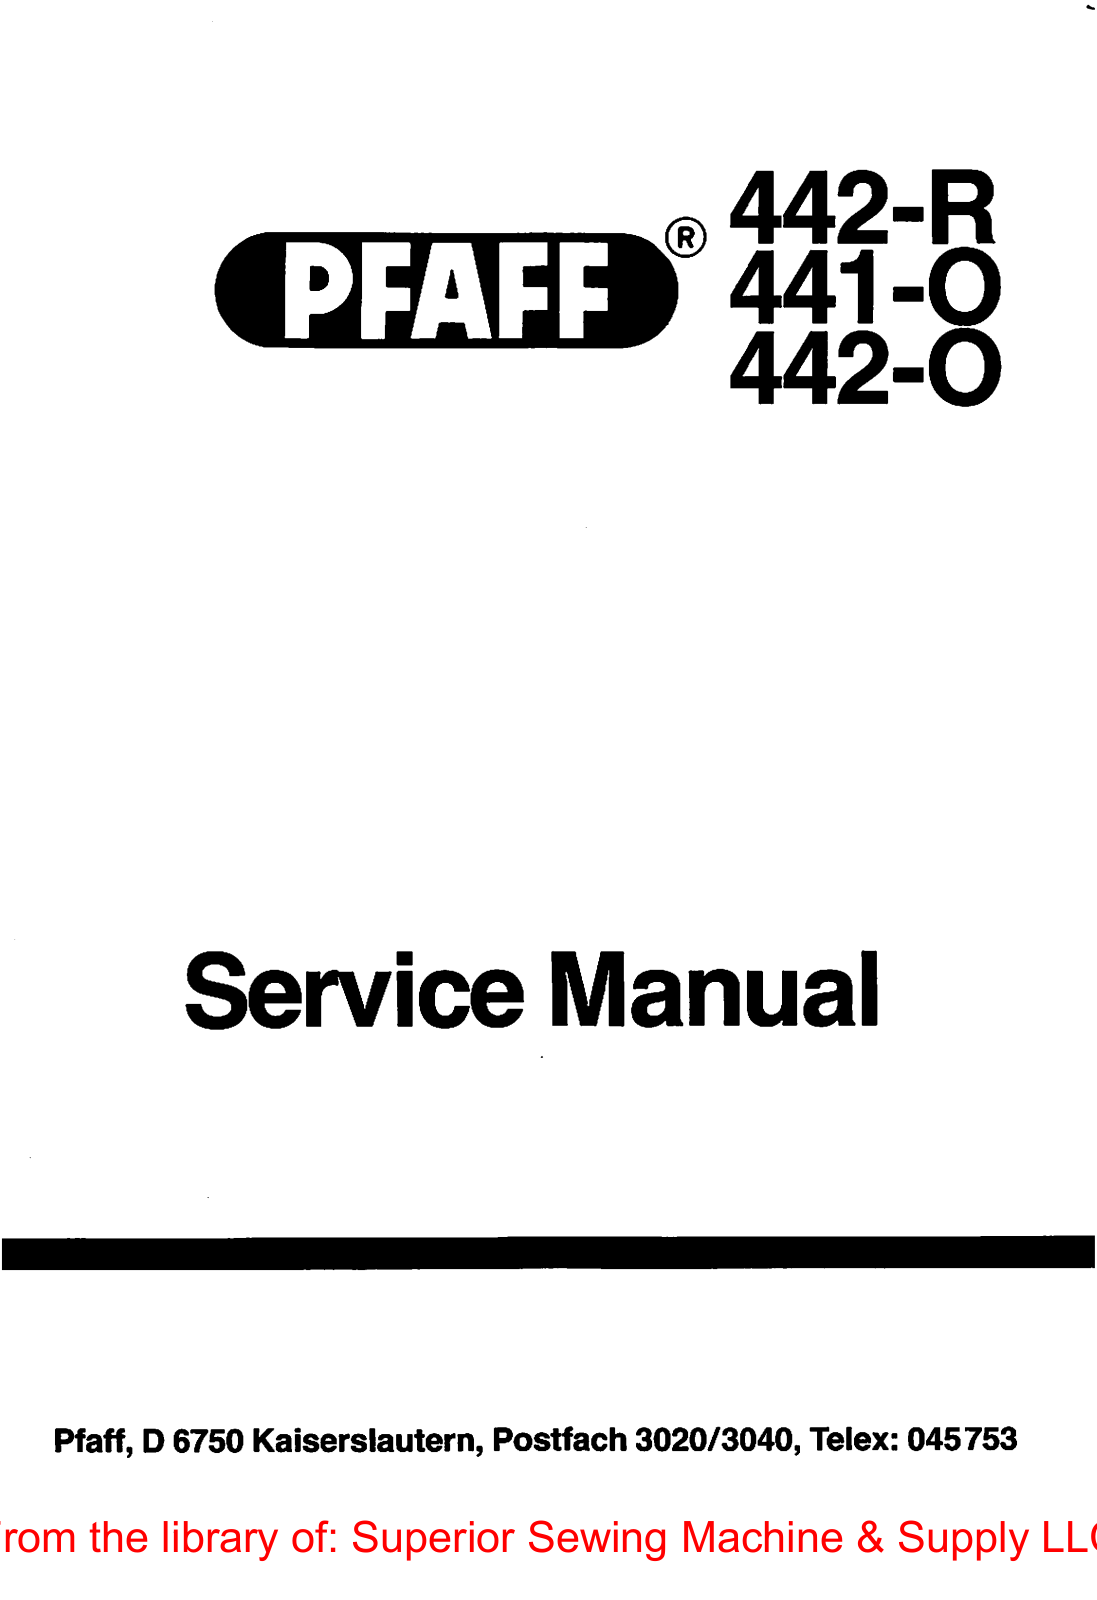 Pfaff 442-R, 441-0, 442-0 Service Manual